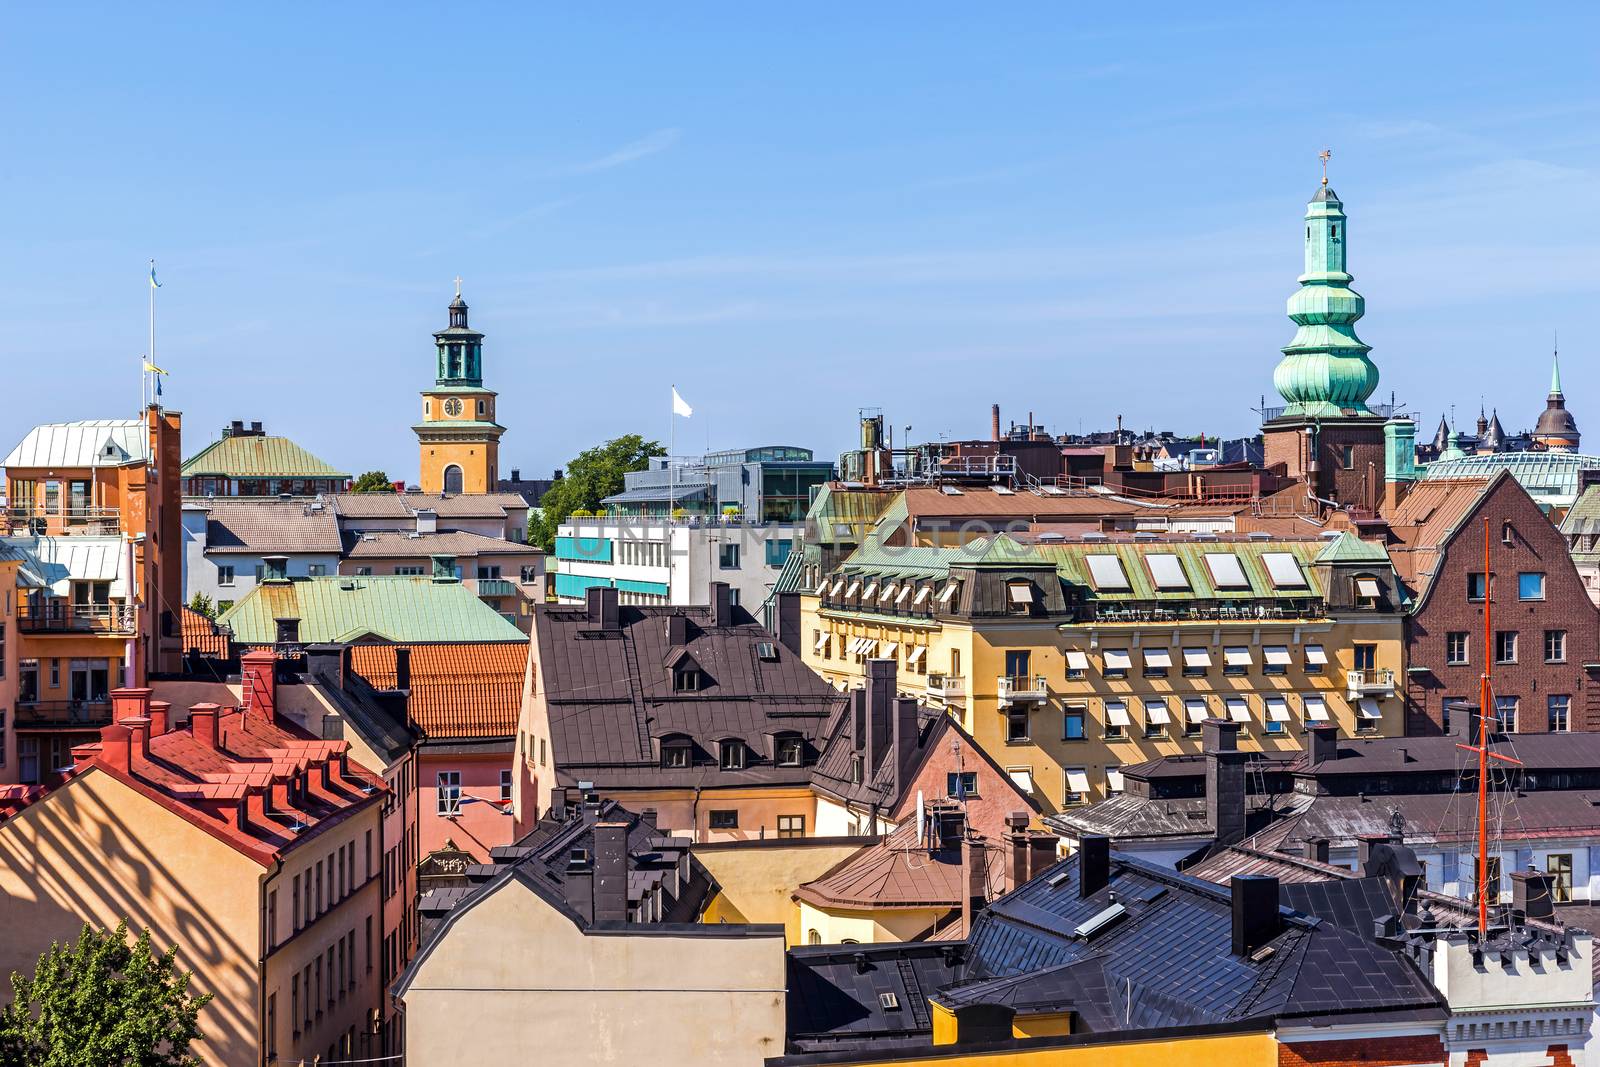 Stockholm roofs by pawel_szczepanski